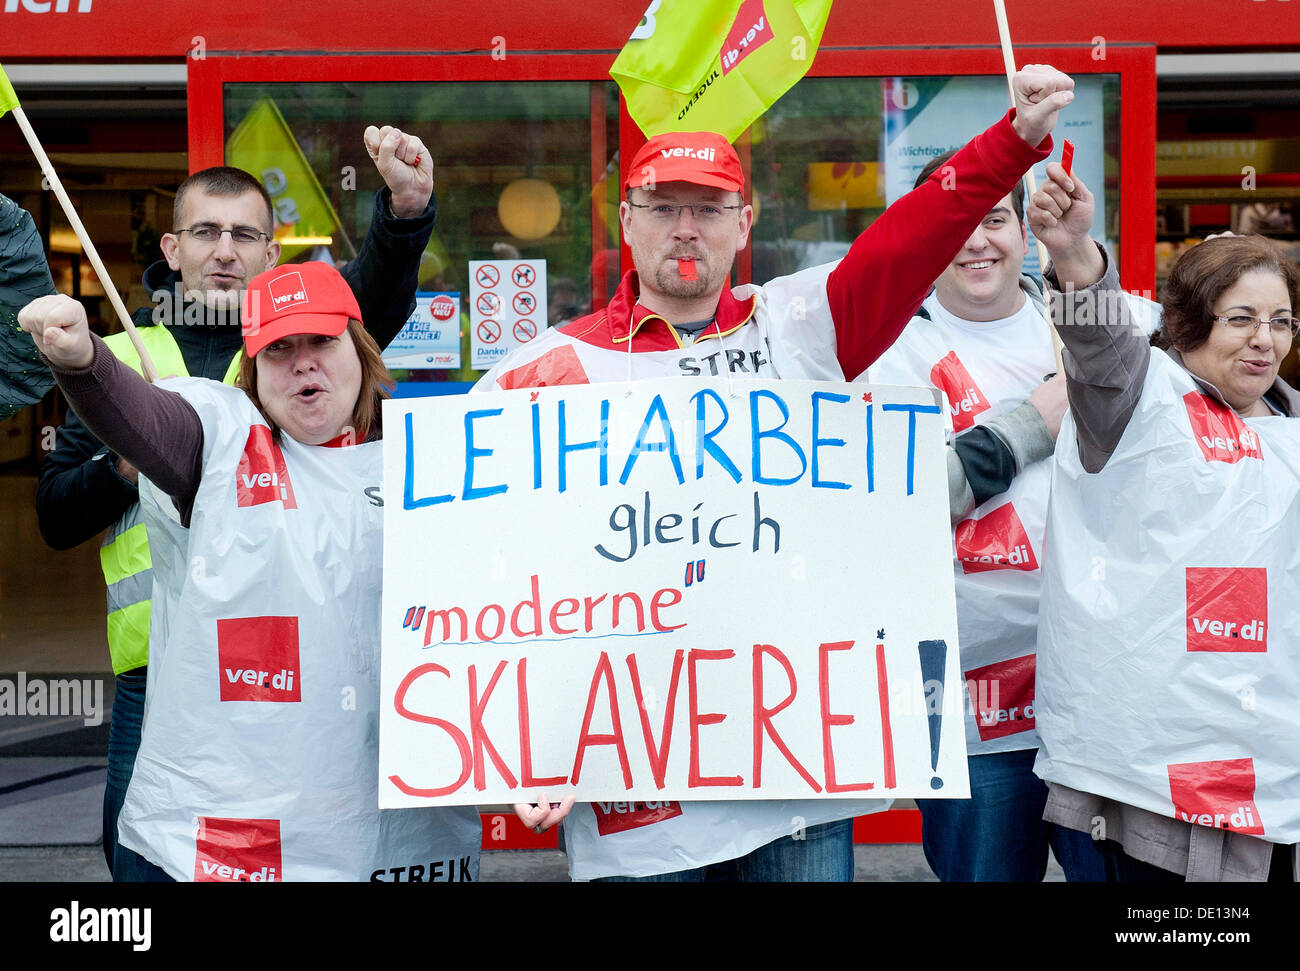 Segno' Leiharbeit gleich moderne Sklaverei', tedesco per il lavoro temporaneo è schiavitù moderna", giorno sciopero contro l'uso di Foto Stock